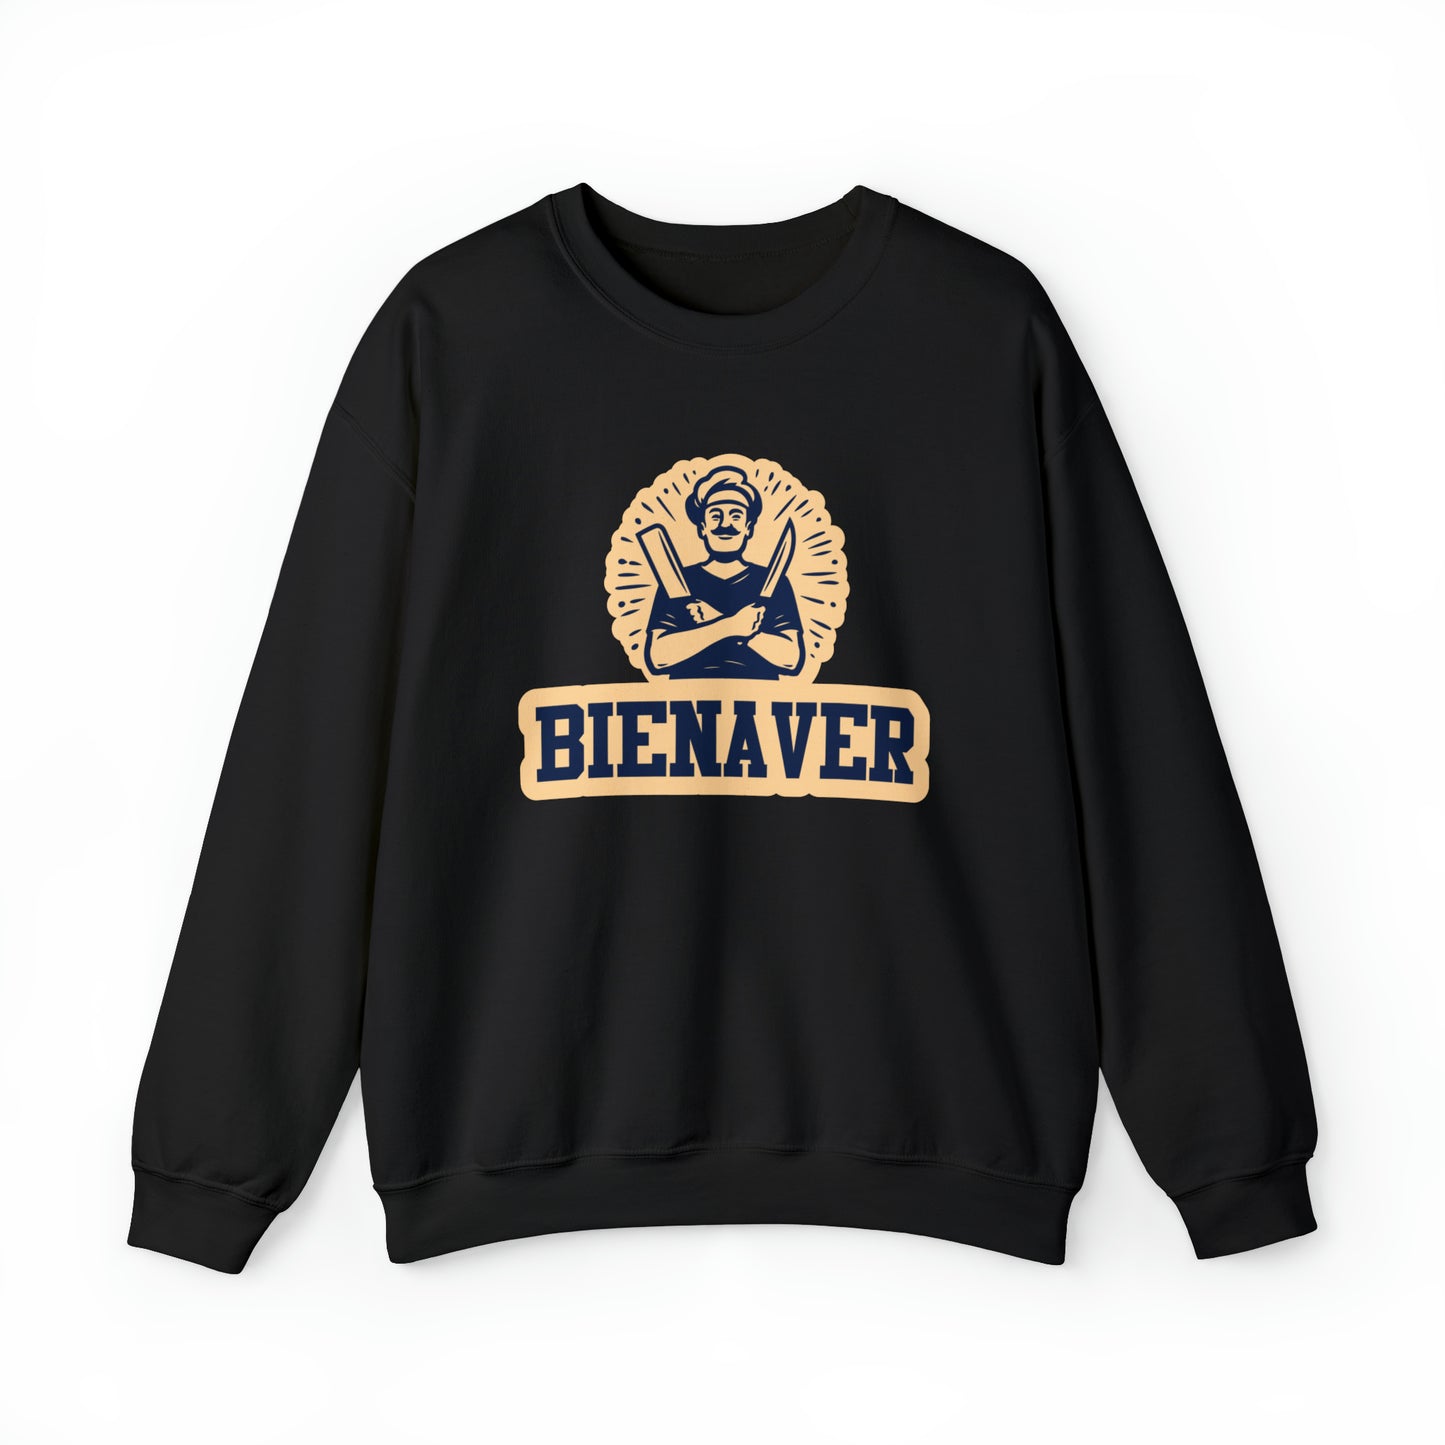 Int Oilsjters - Sweater - Bienaver